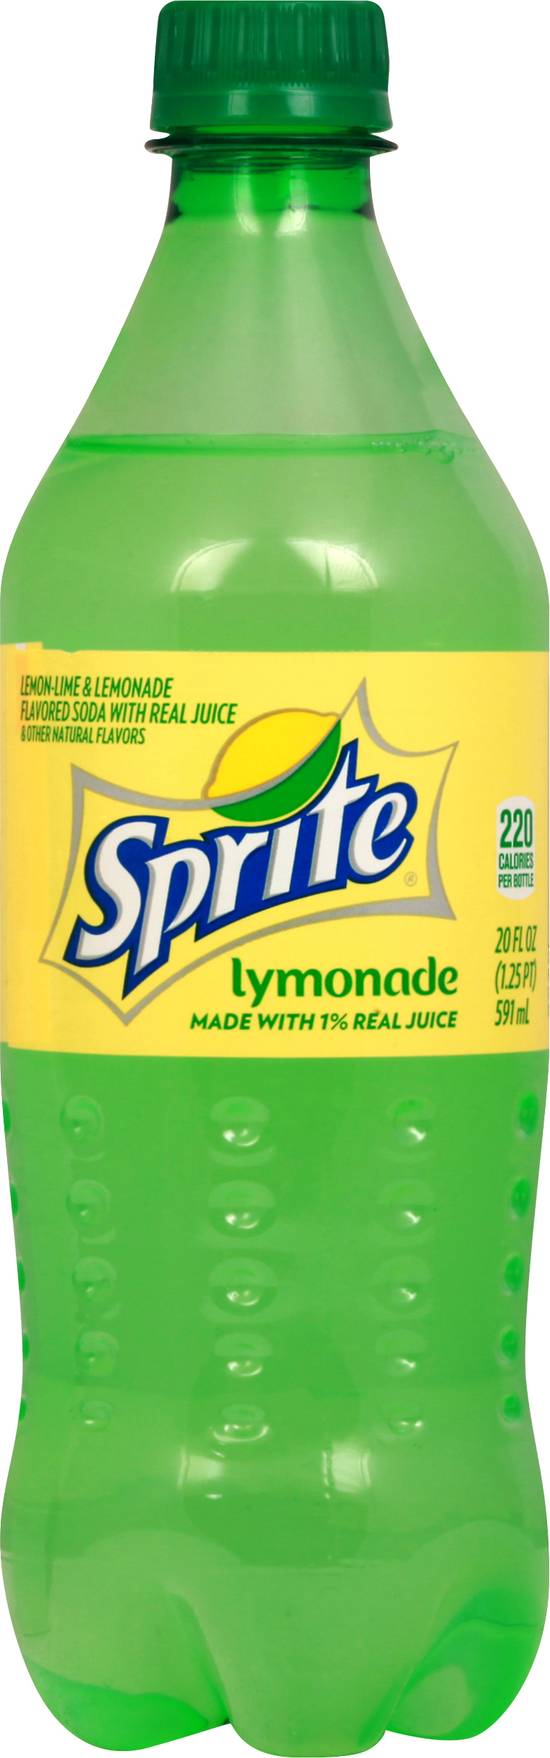 Sprite 1% Real Juice Lymonade Soda (20 fl oz)